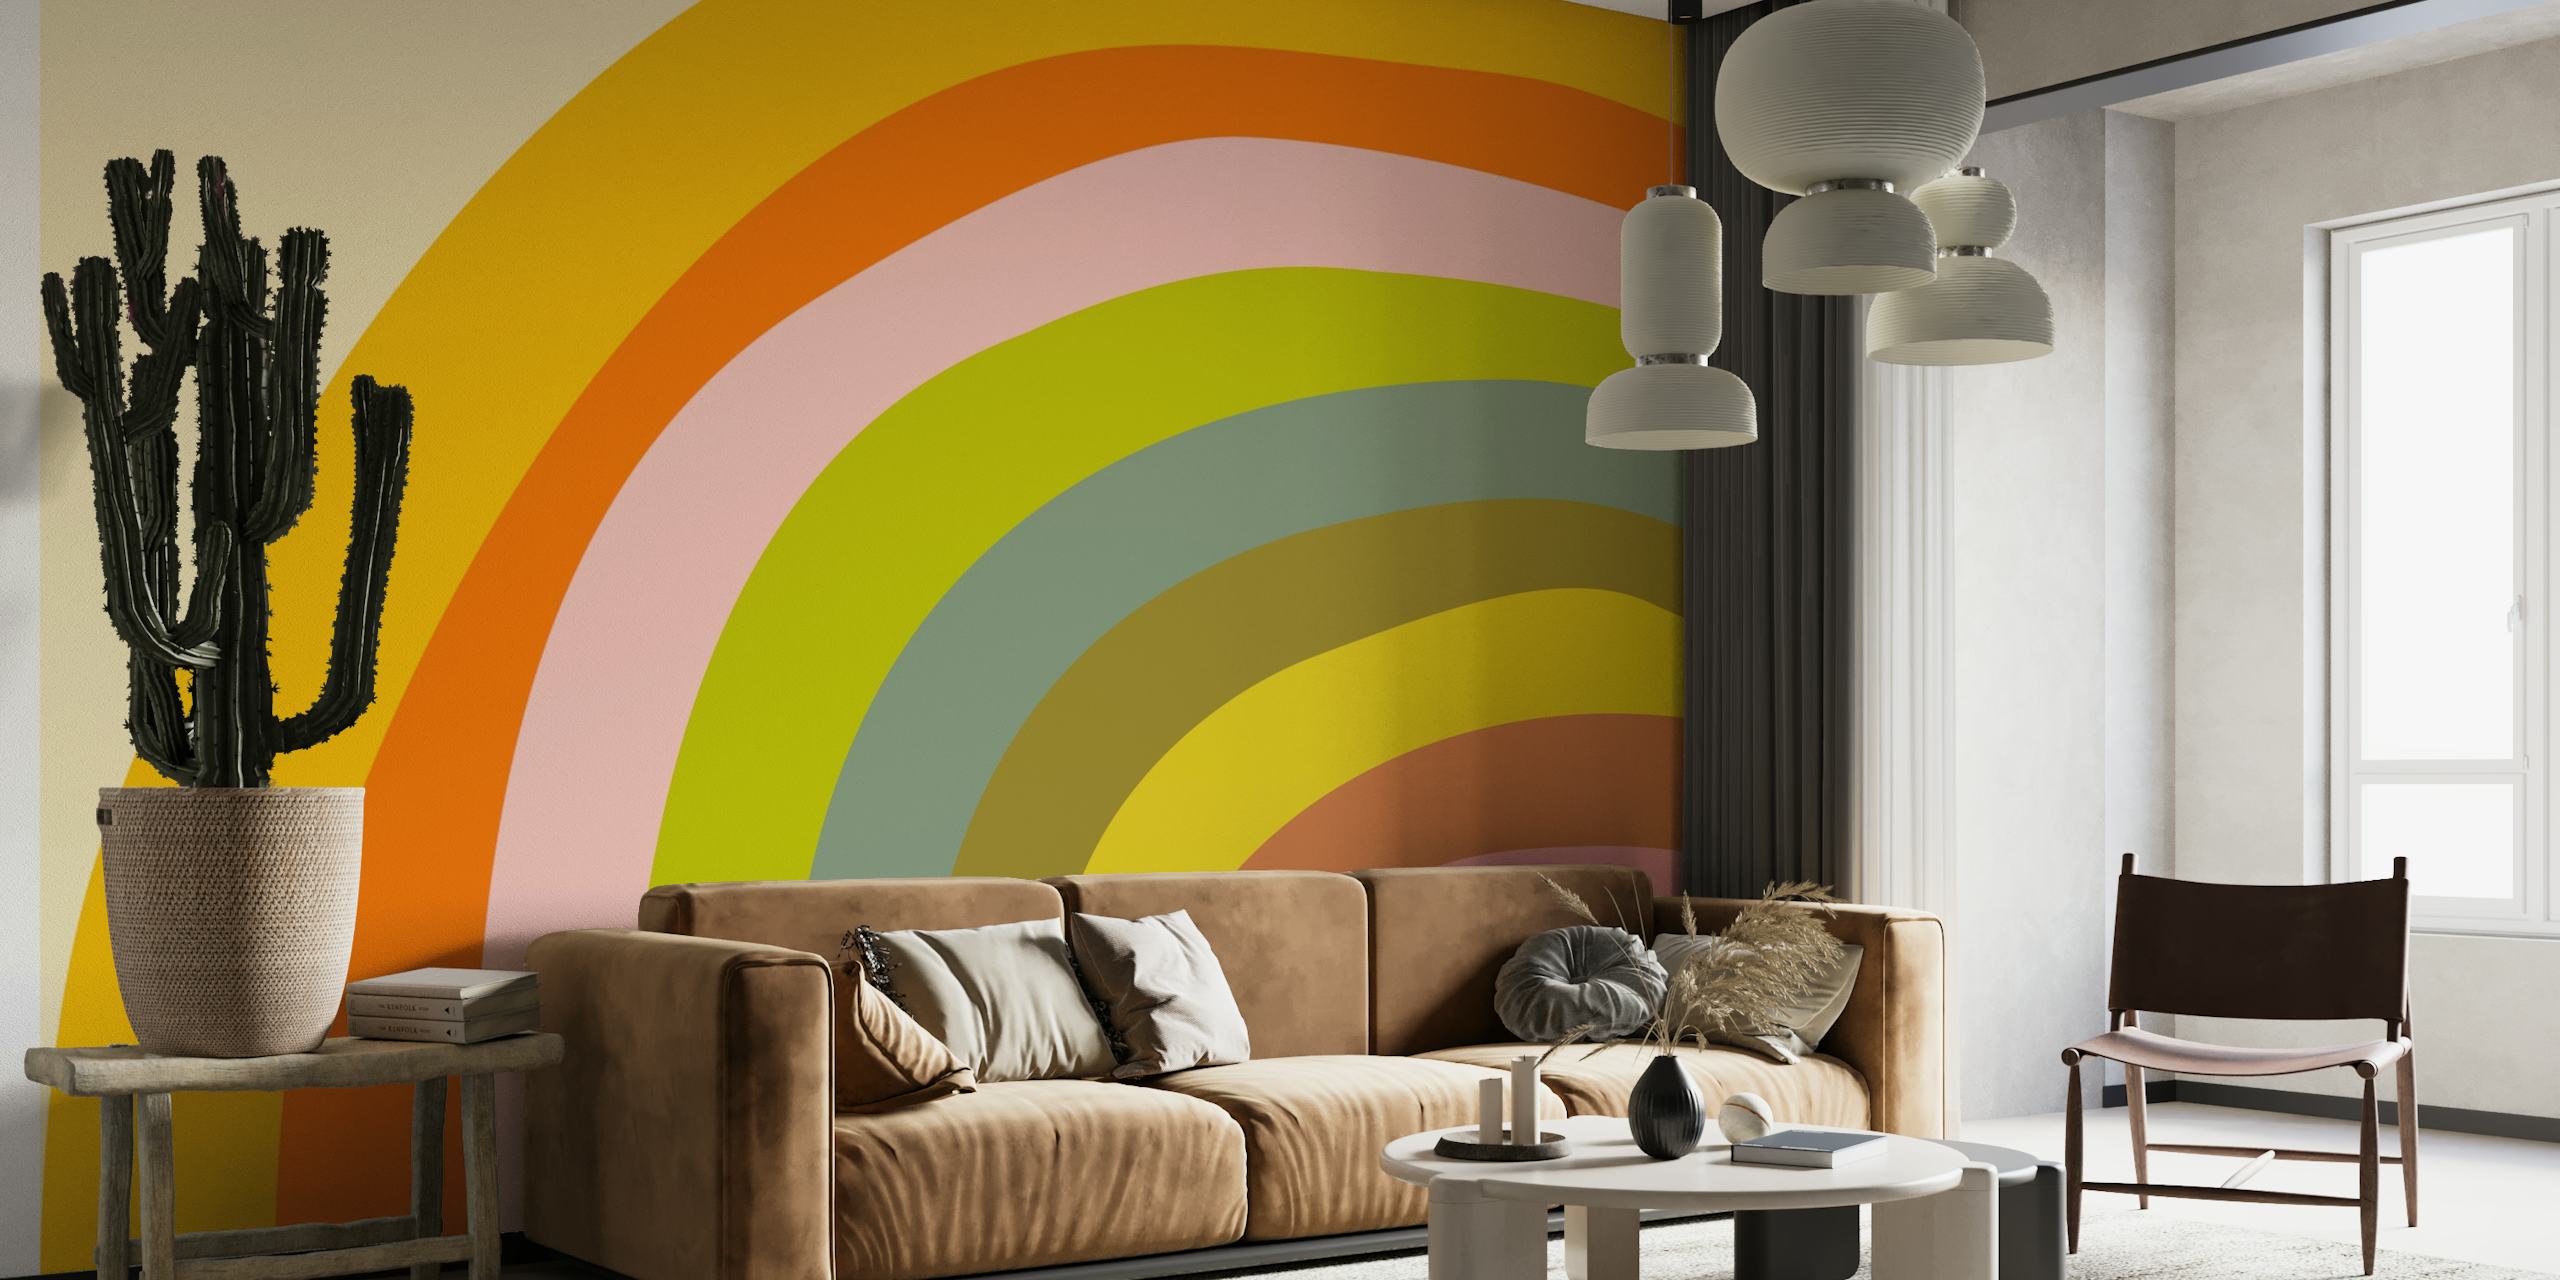 Um mural de parede com um arco-íris abstrato ousado e colorido em tons quentes e frios.